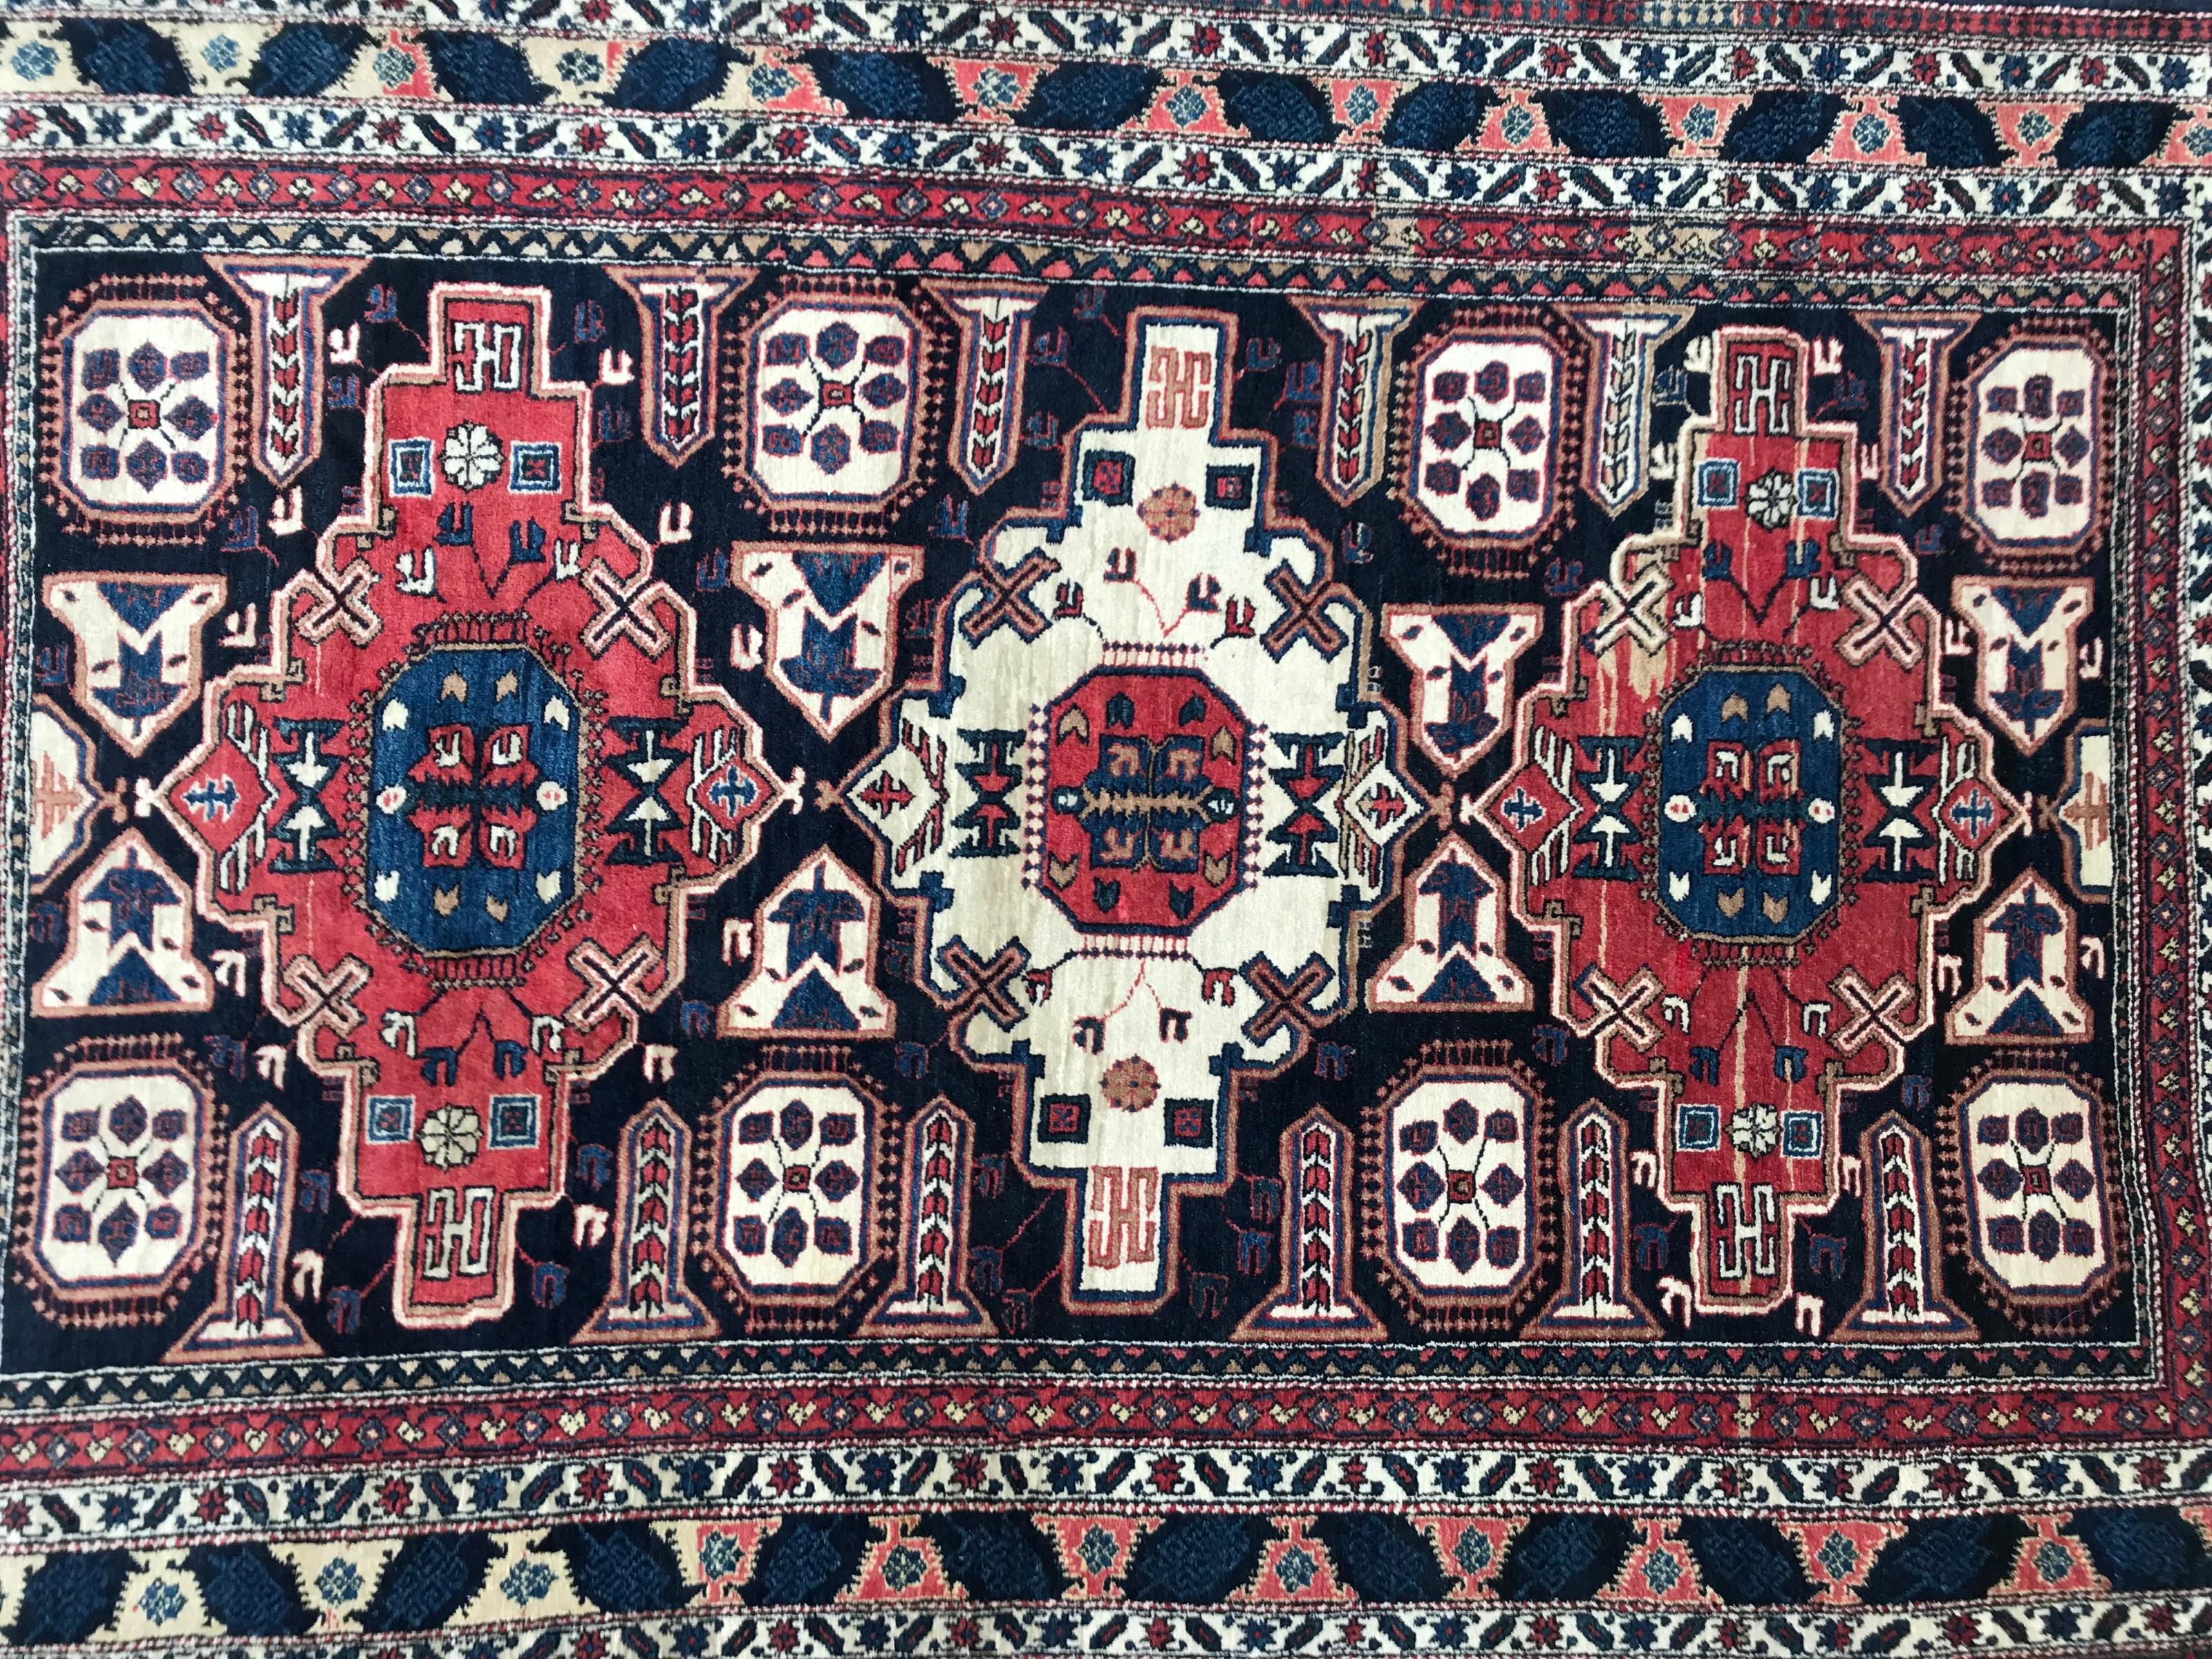 Joli tapis Chirwan de la fin du 20ème siècle avec de beaux motifs géométriques shirwan Kouba et de très belles couleurs avec du bleu, du rouge, du vert, du jaune et du bleu foncé, entièrement noué à la main avec du velours de laine sur une base de